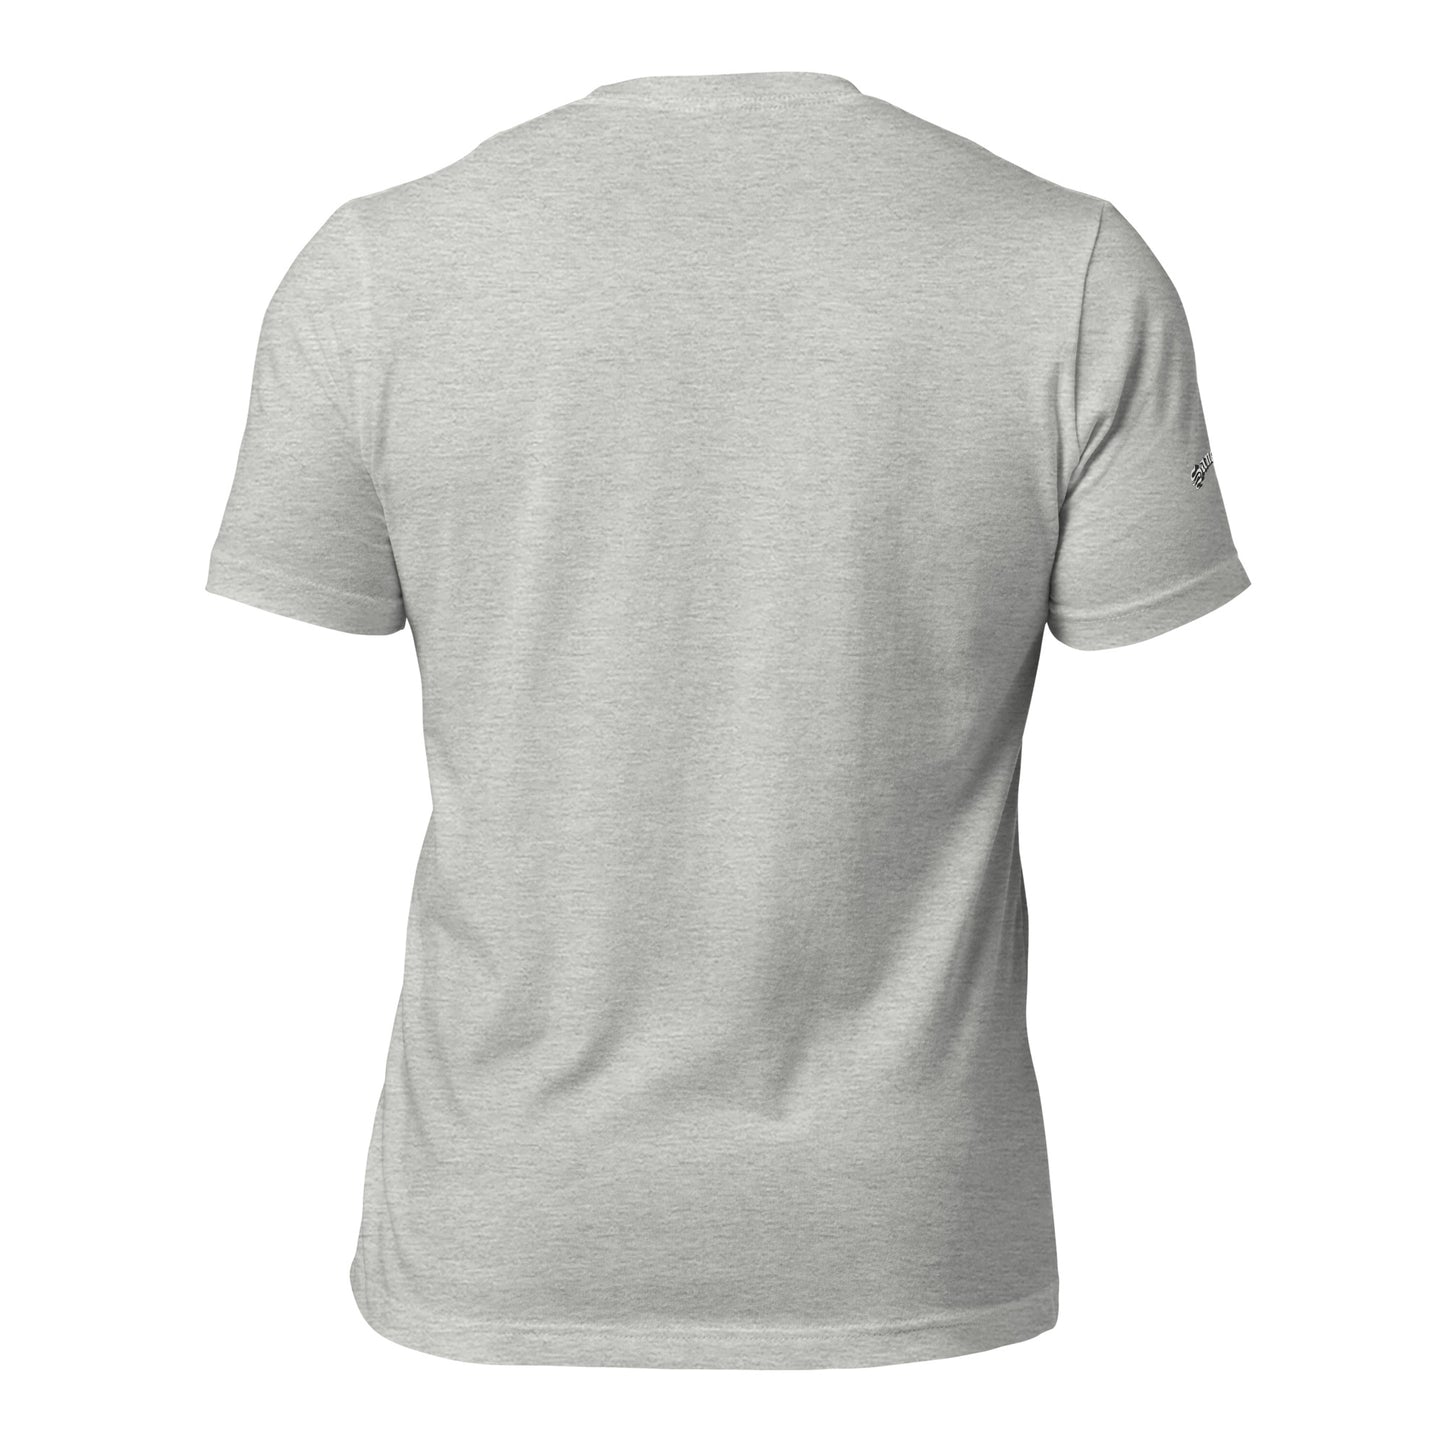 AMAZING GRACE- Unisex t-shirt